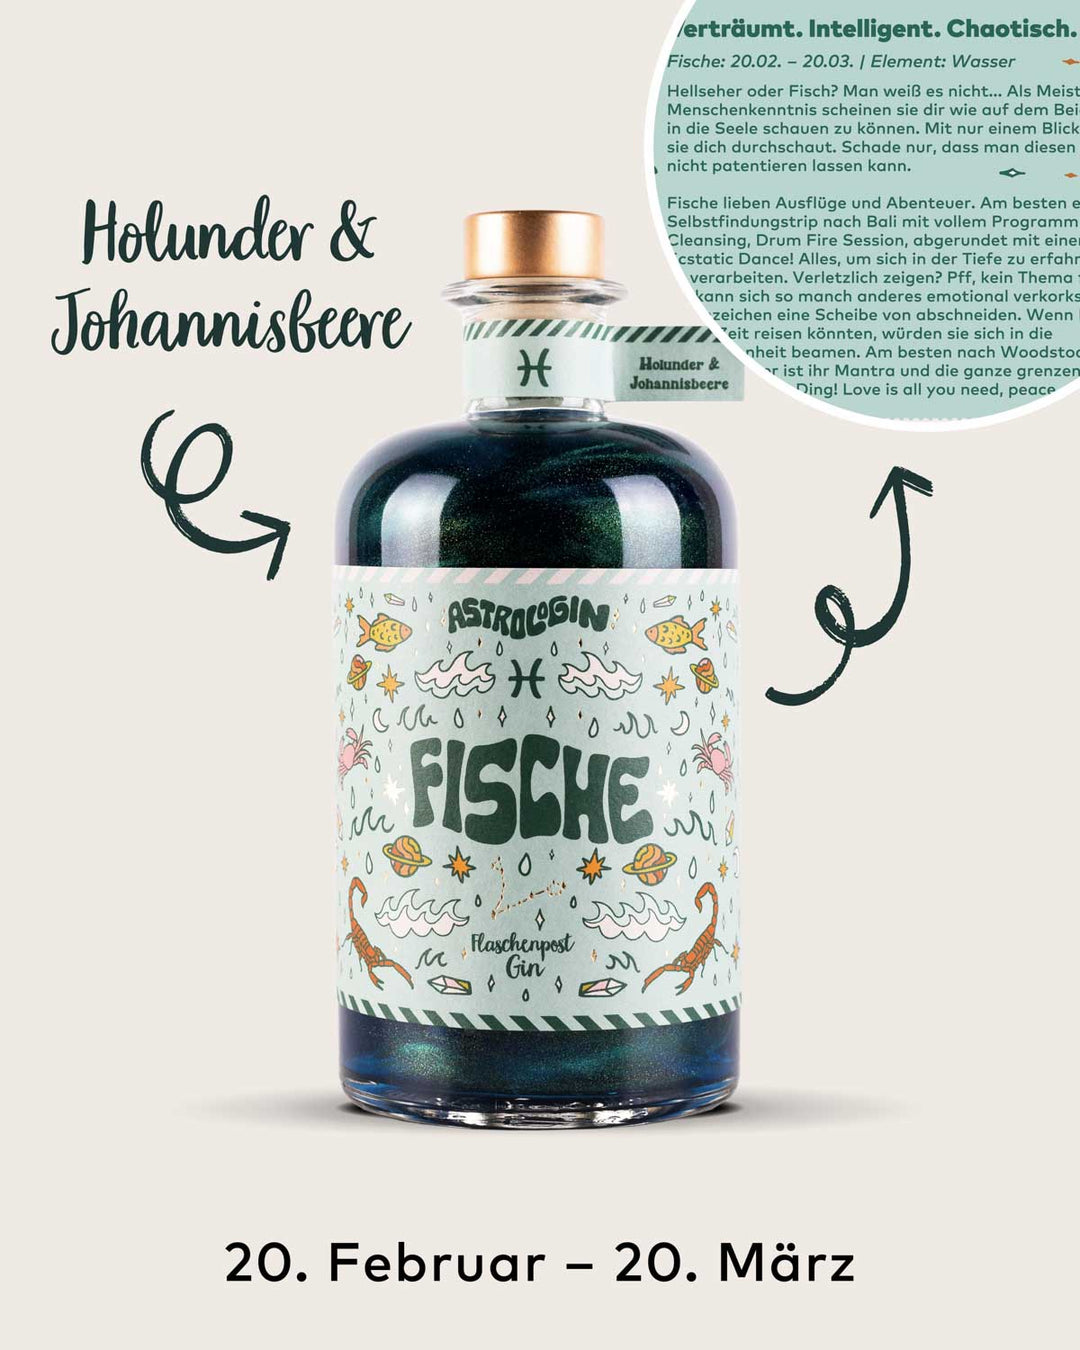 AstroloGin - Fische Edition gehört zum Element Wasser umfasst Geburtstage zwischen dem 20.02. bis 22.03. Mit den Botanicals Holunder & Johannisbeere ein ganz besonderes fruchtiges Geschmackserlebnis bei deinem nächsten Gin & Tonic!